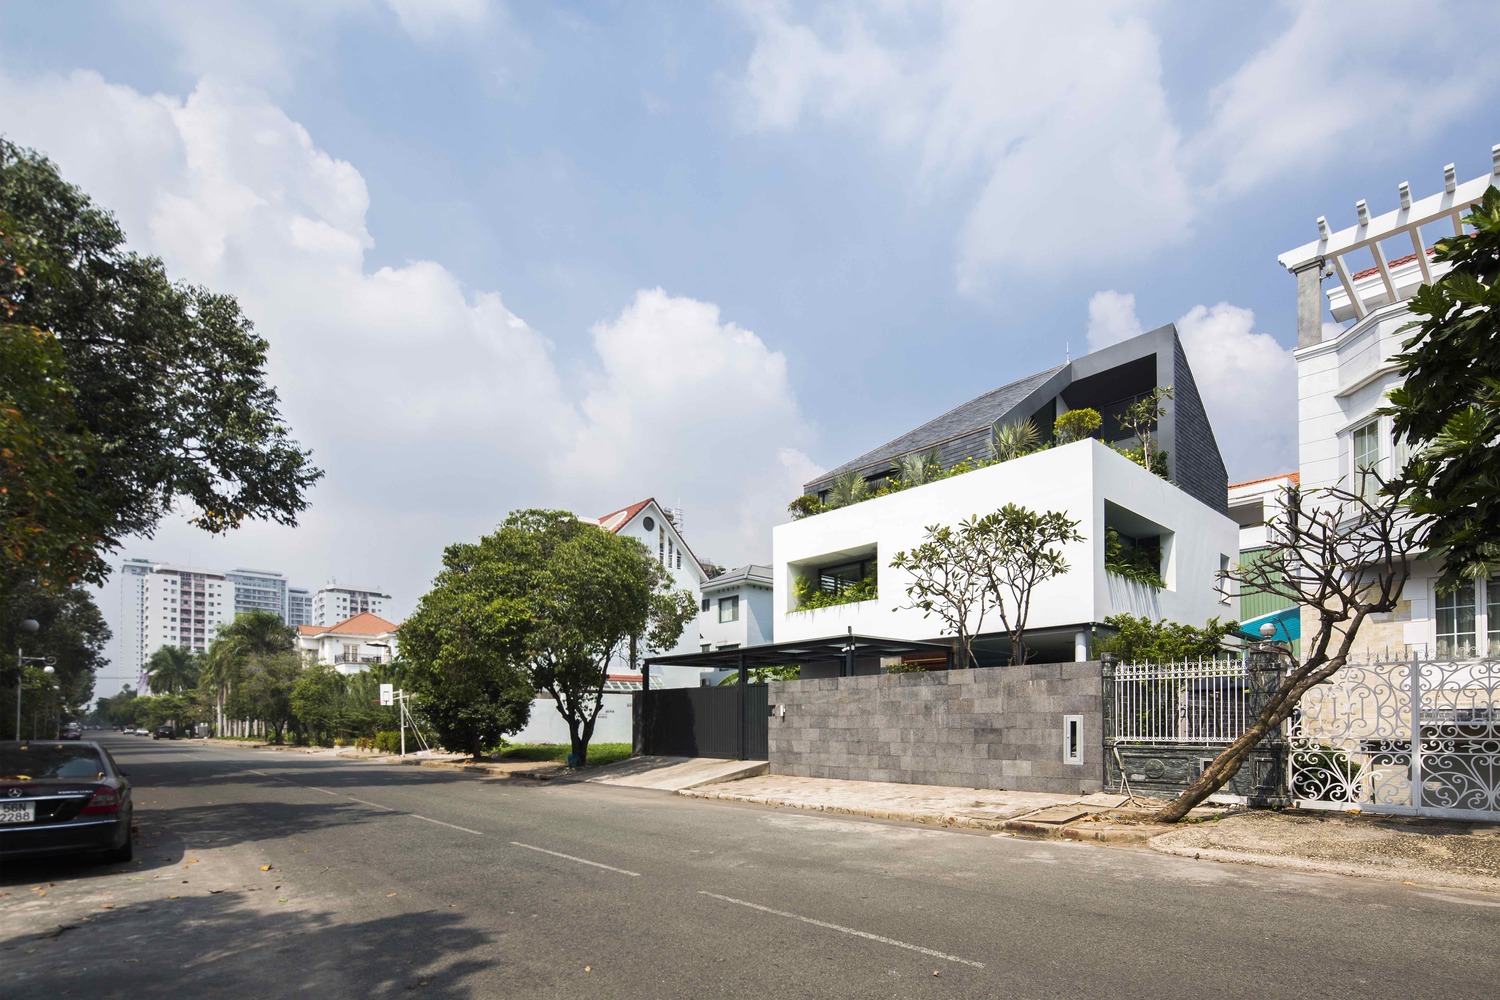 Ngôi nhà như khối lập phương trắng độc đáo cùng sắc xanh cây cối nổi bật giữa “khu nhà giàu” Sài Gòn - Ảnh 1